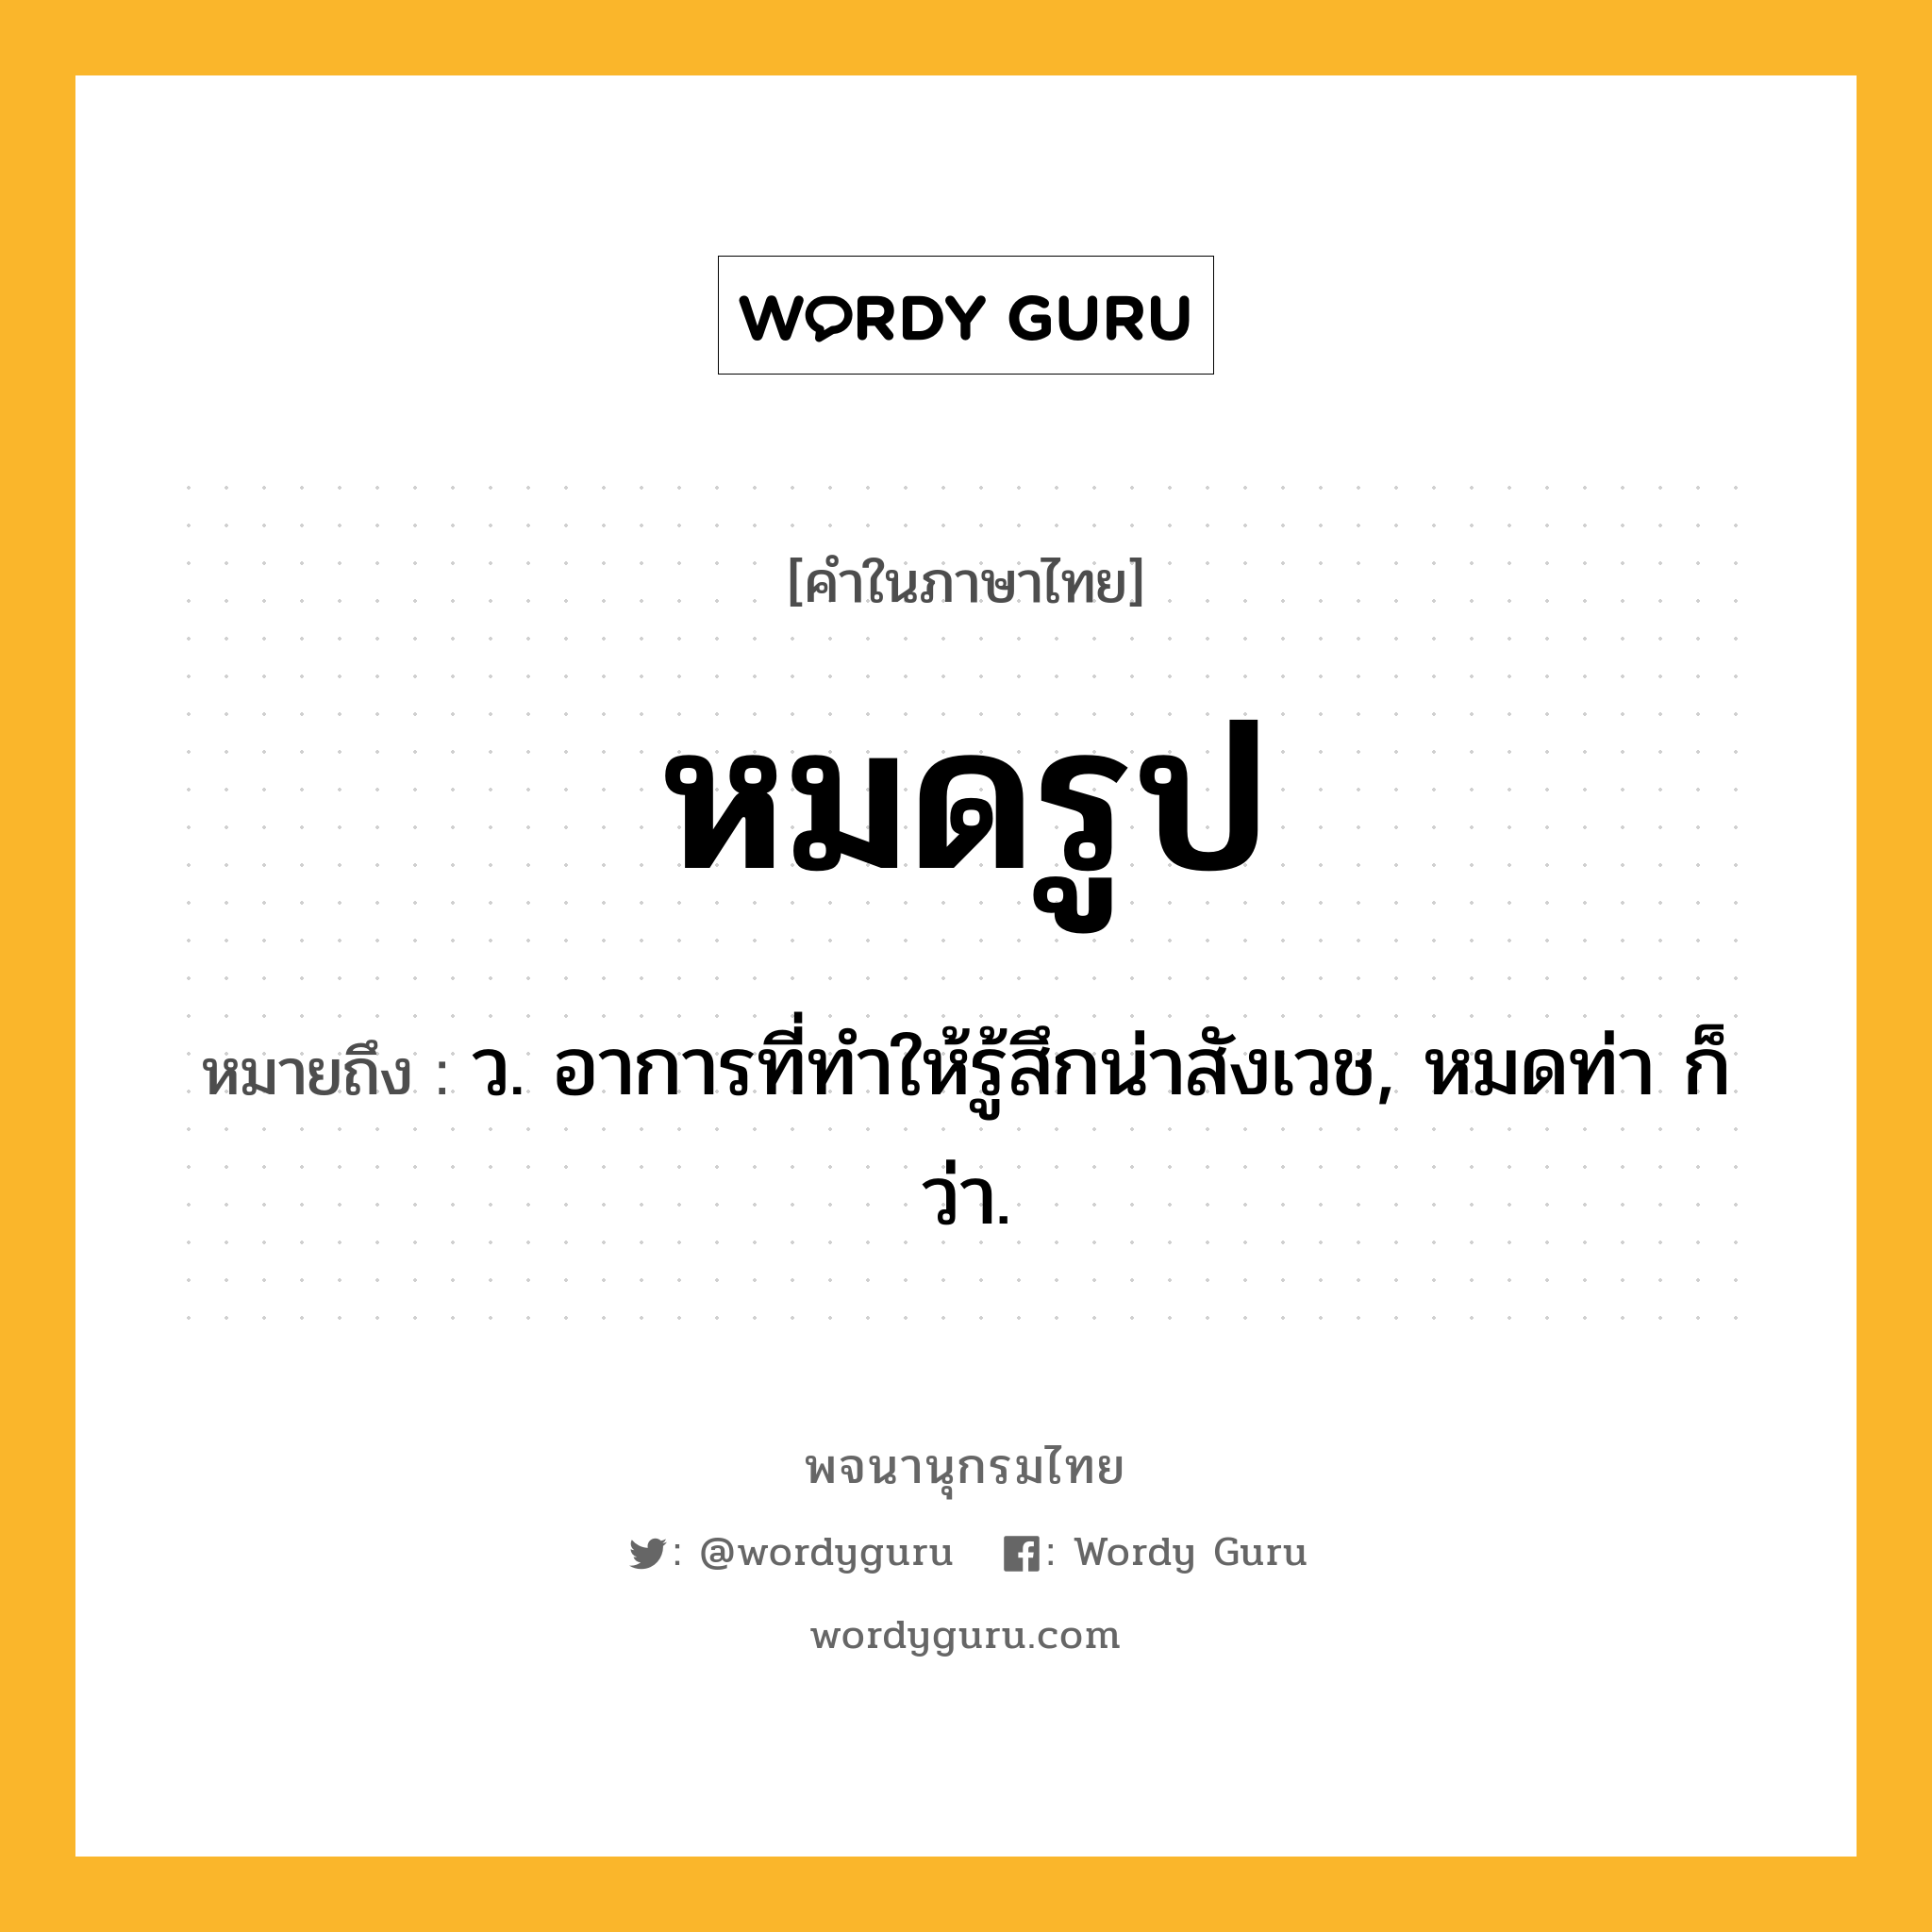 หมดรูป ความหมาย หมายถึงอะไร?, คำในภาษาไทย หมดรูป หมายถึง ว. อาการที่ทำให้รู้สึกน่าสังเวช, หมดท่า ก็ว่า.